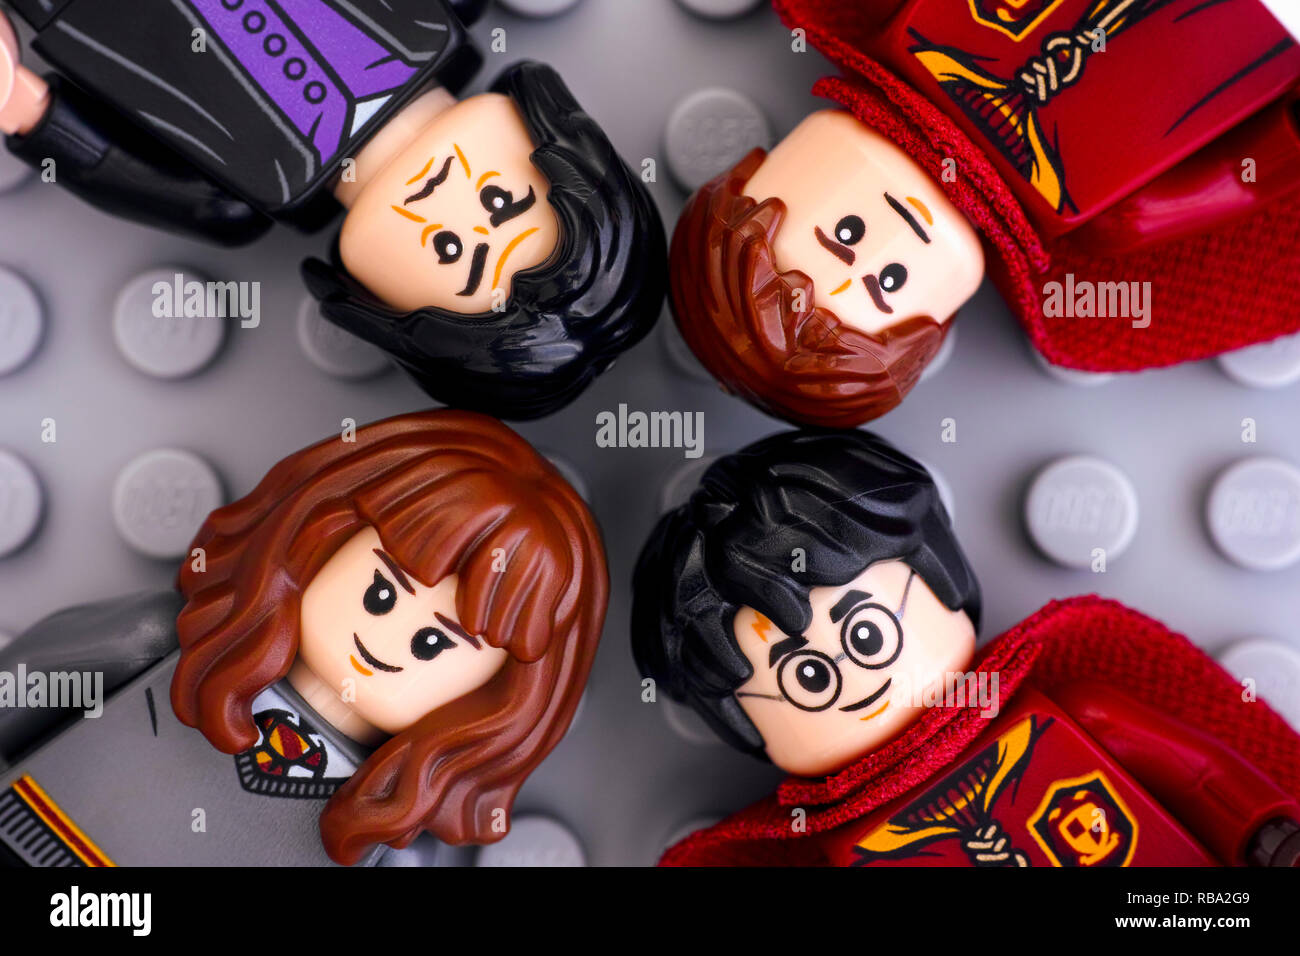 Tambov, Fédération de Russie - janvier 06, 2019 quatre figurines LEGO Harry Potter - Harry Potter, Hermione Granger, Severus Rogue et Oliver Wood Banque D'Images